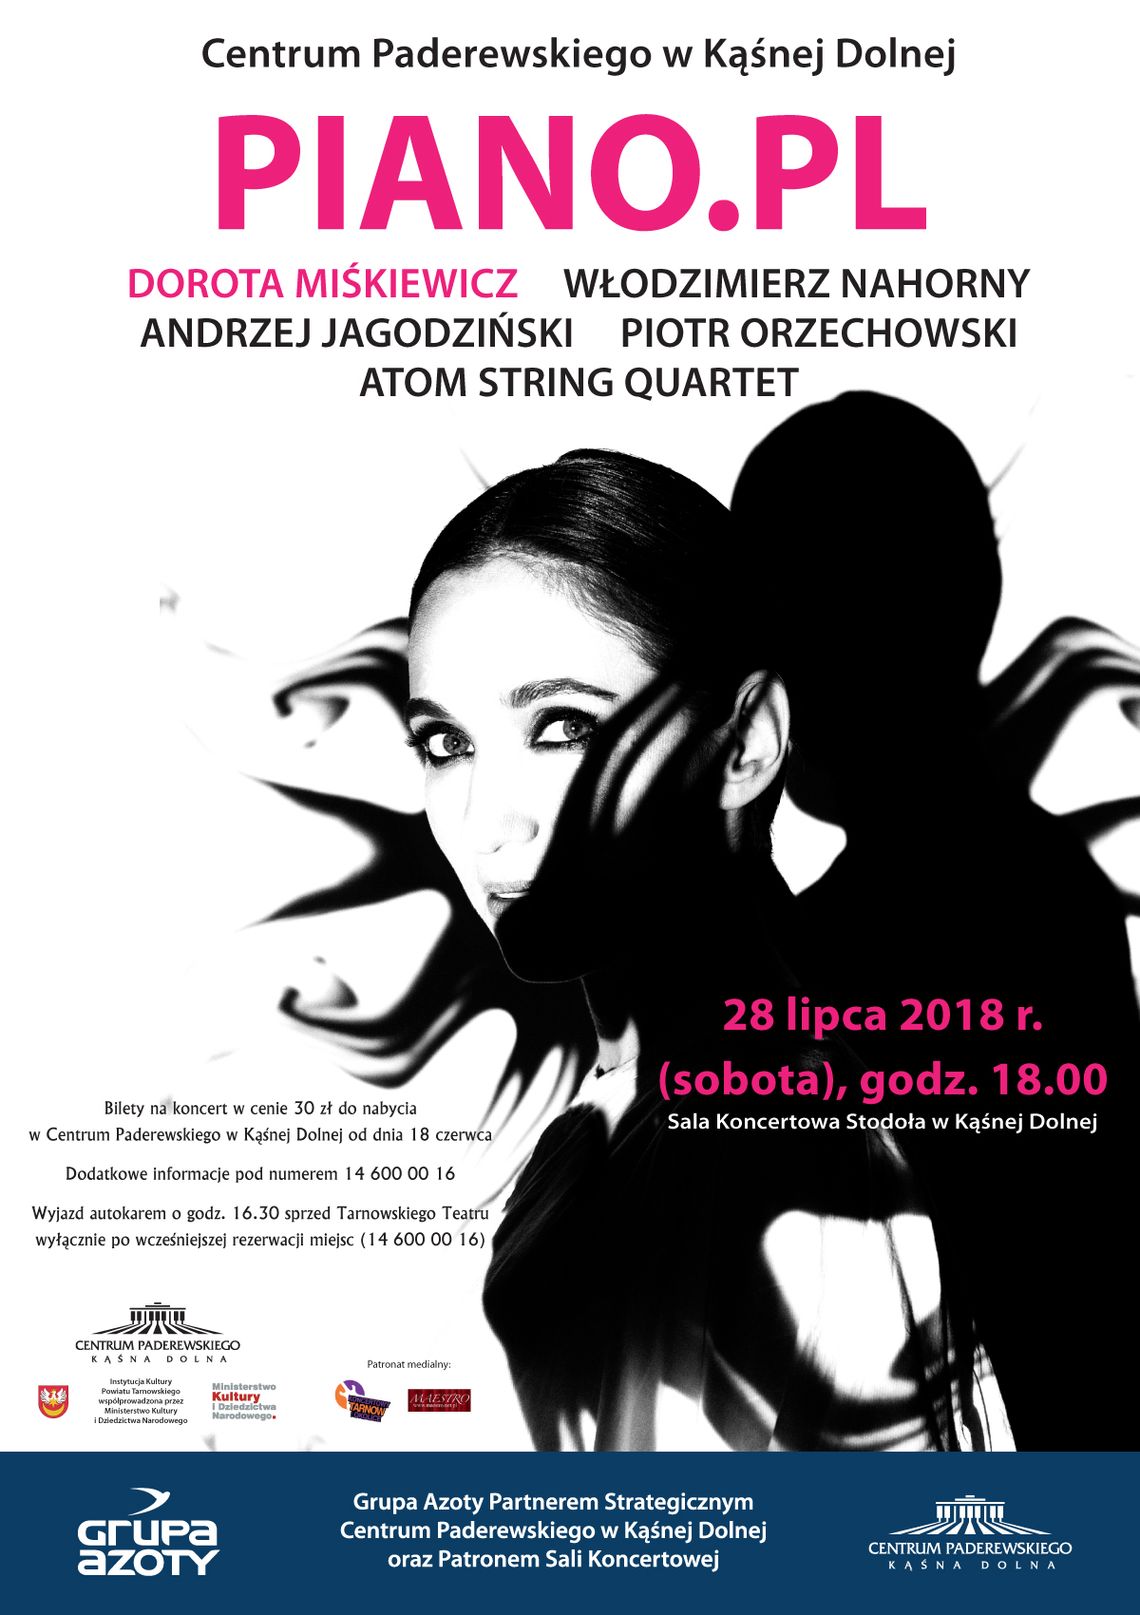 Dorota Miśkiewicz, pianiści jazzowi oraz Atom String Quartet